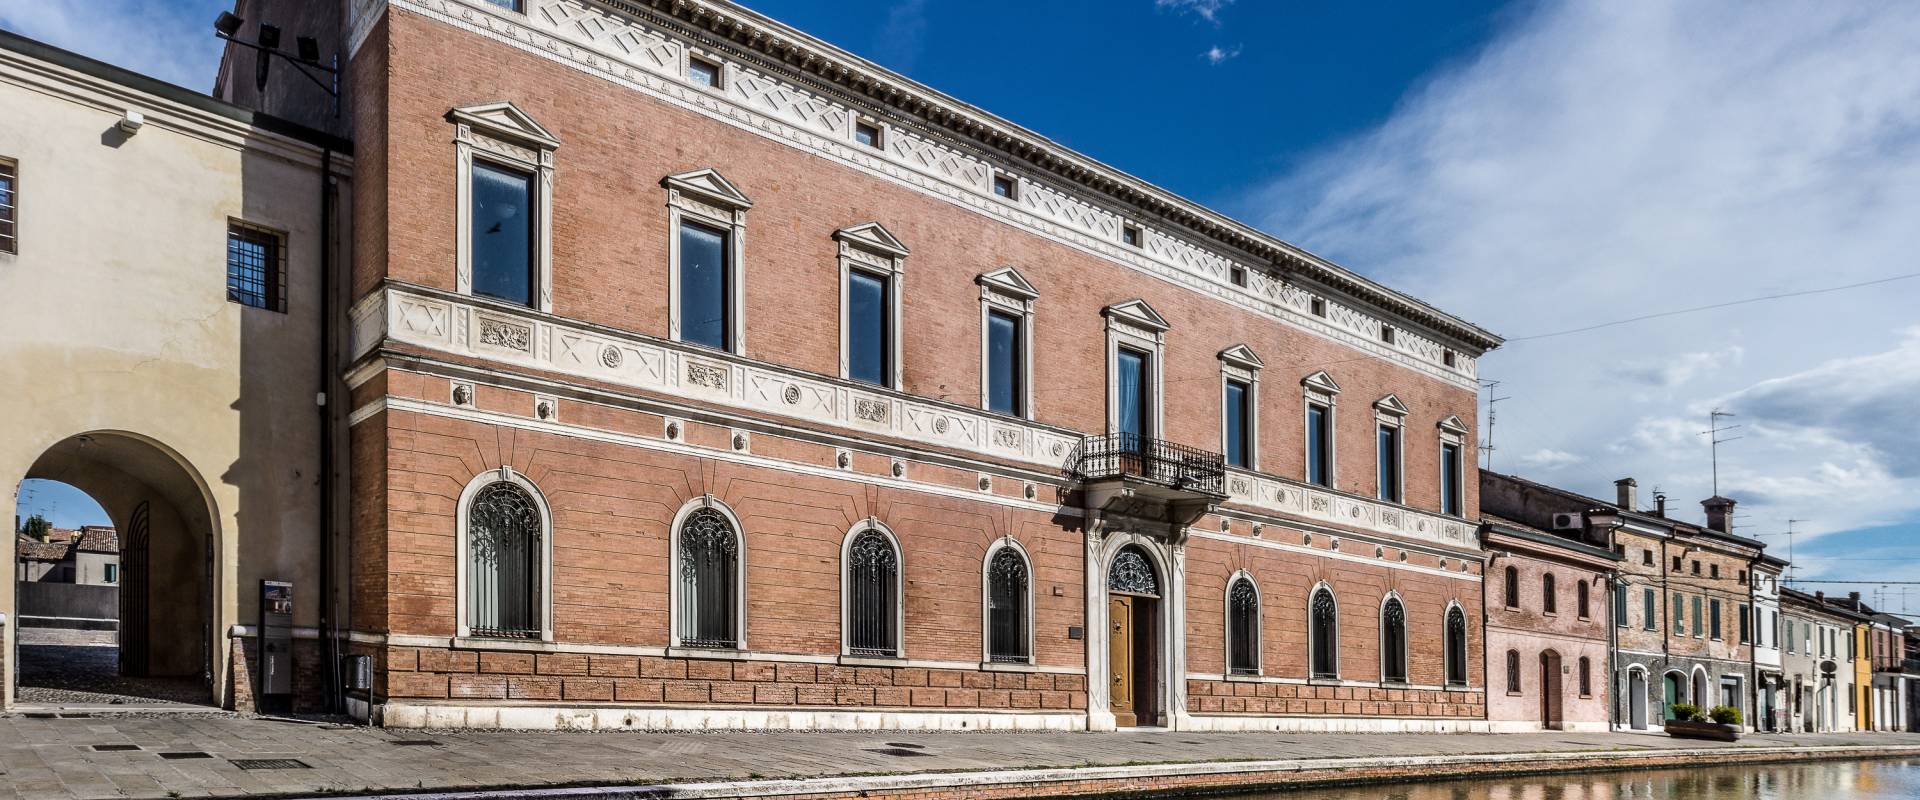 Palazzo Bellini Comacchio photo by Vanni Lazzari